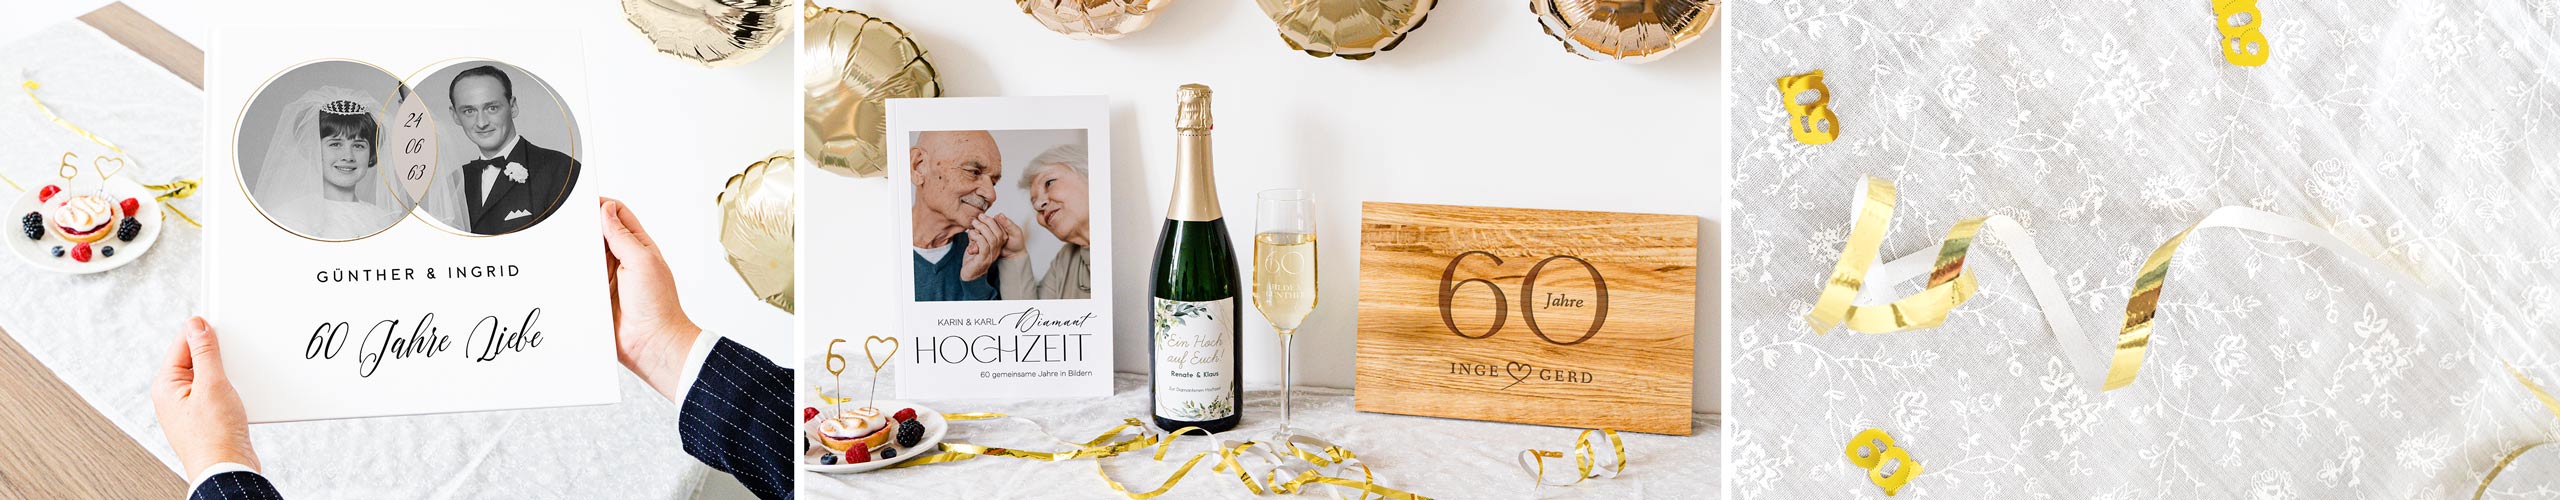 Fotoalbum, personalisierte Weinflasche und Brotzeitbrett mit Gravur zur Diamantenen Hochzeit